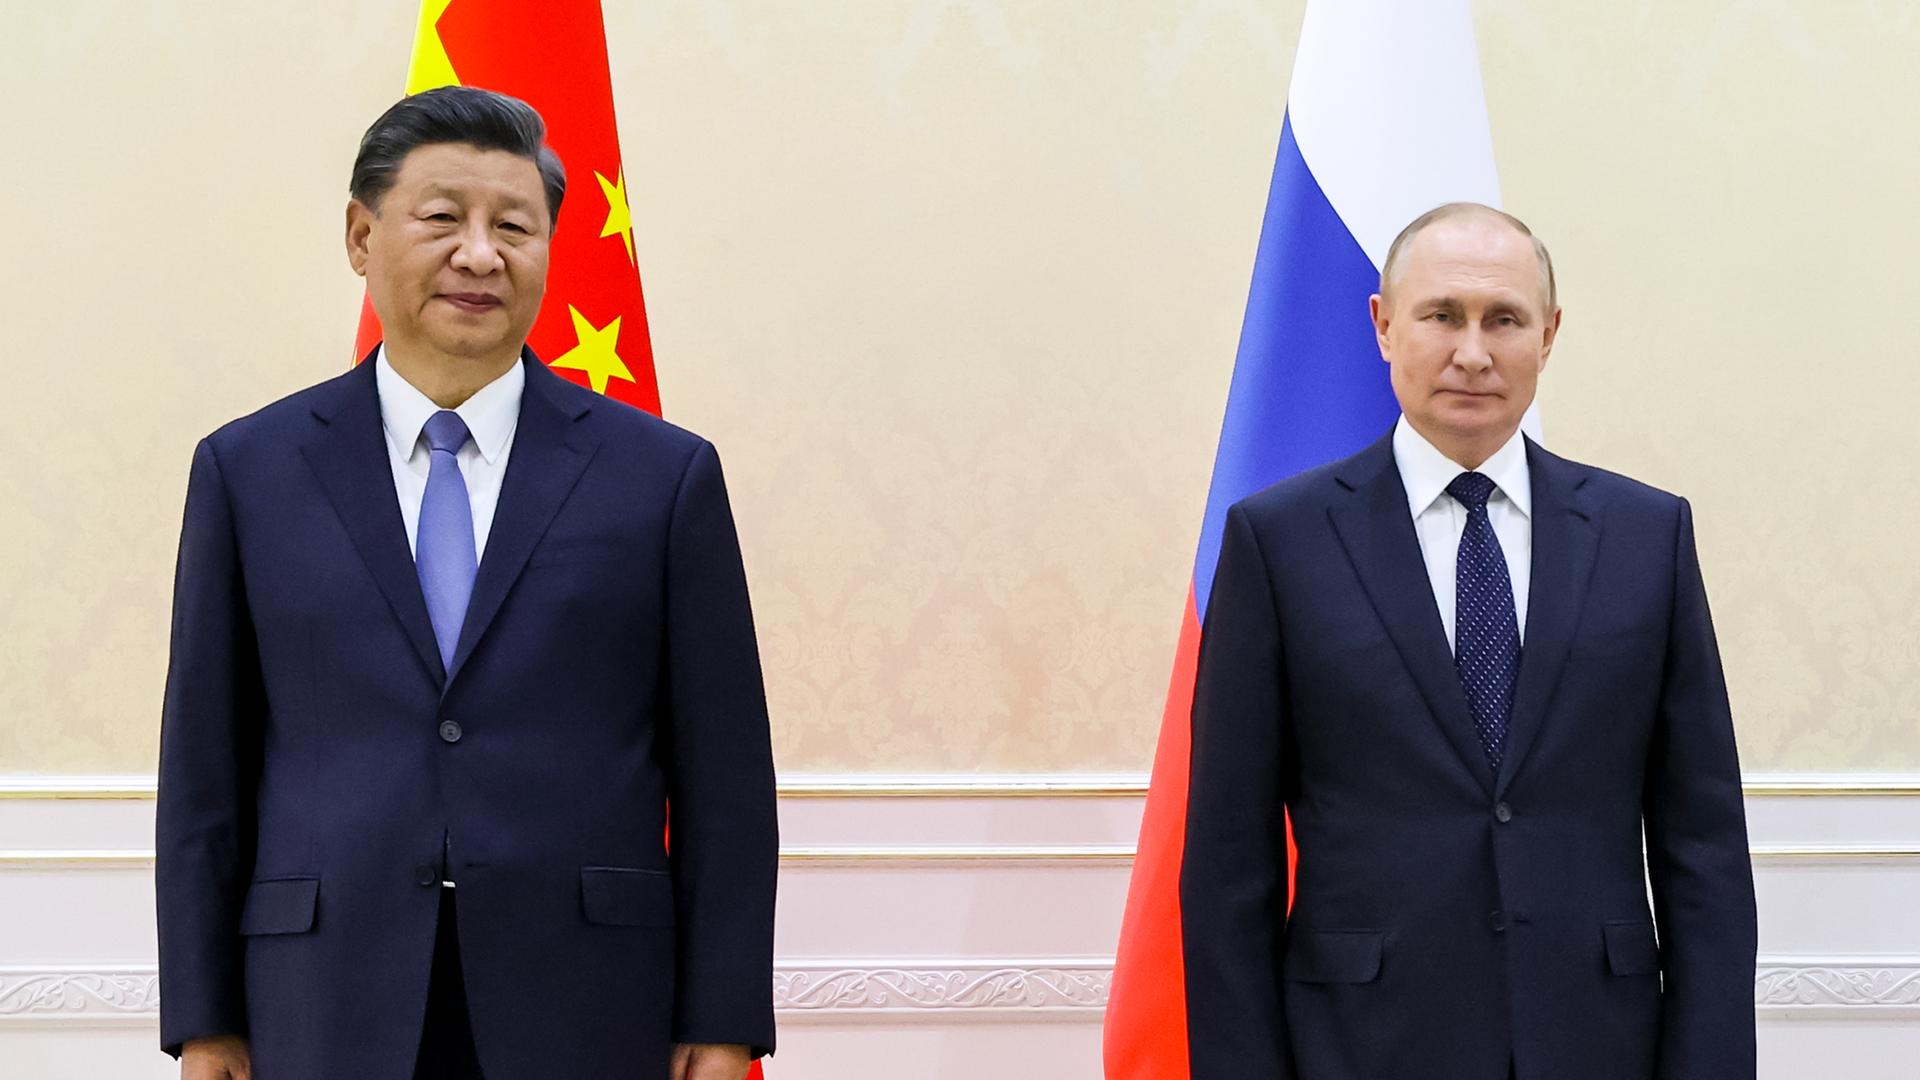 Der chinesische Präsident Xi Jingping und der russische Präsident Wladimir Putin stehen vor ihren jeweiligen Landesflaggen